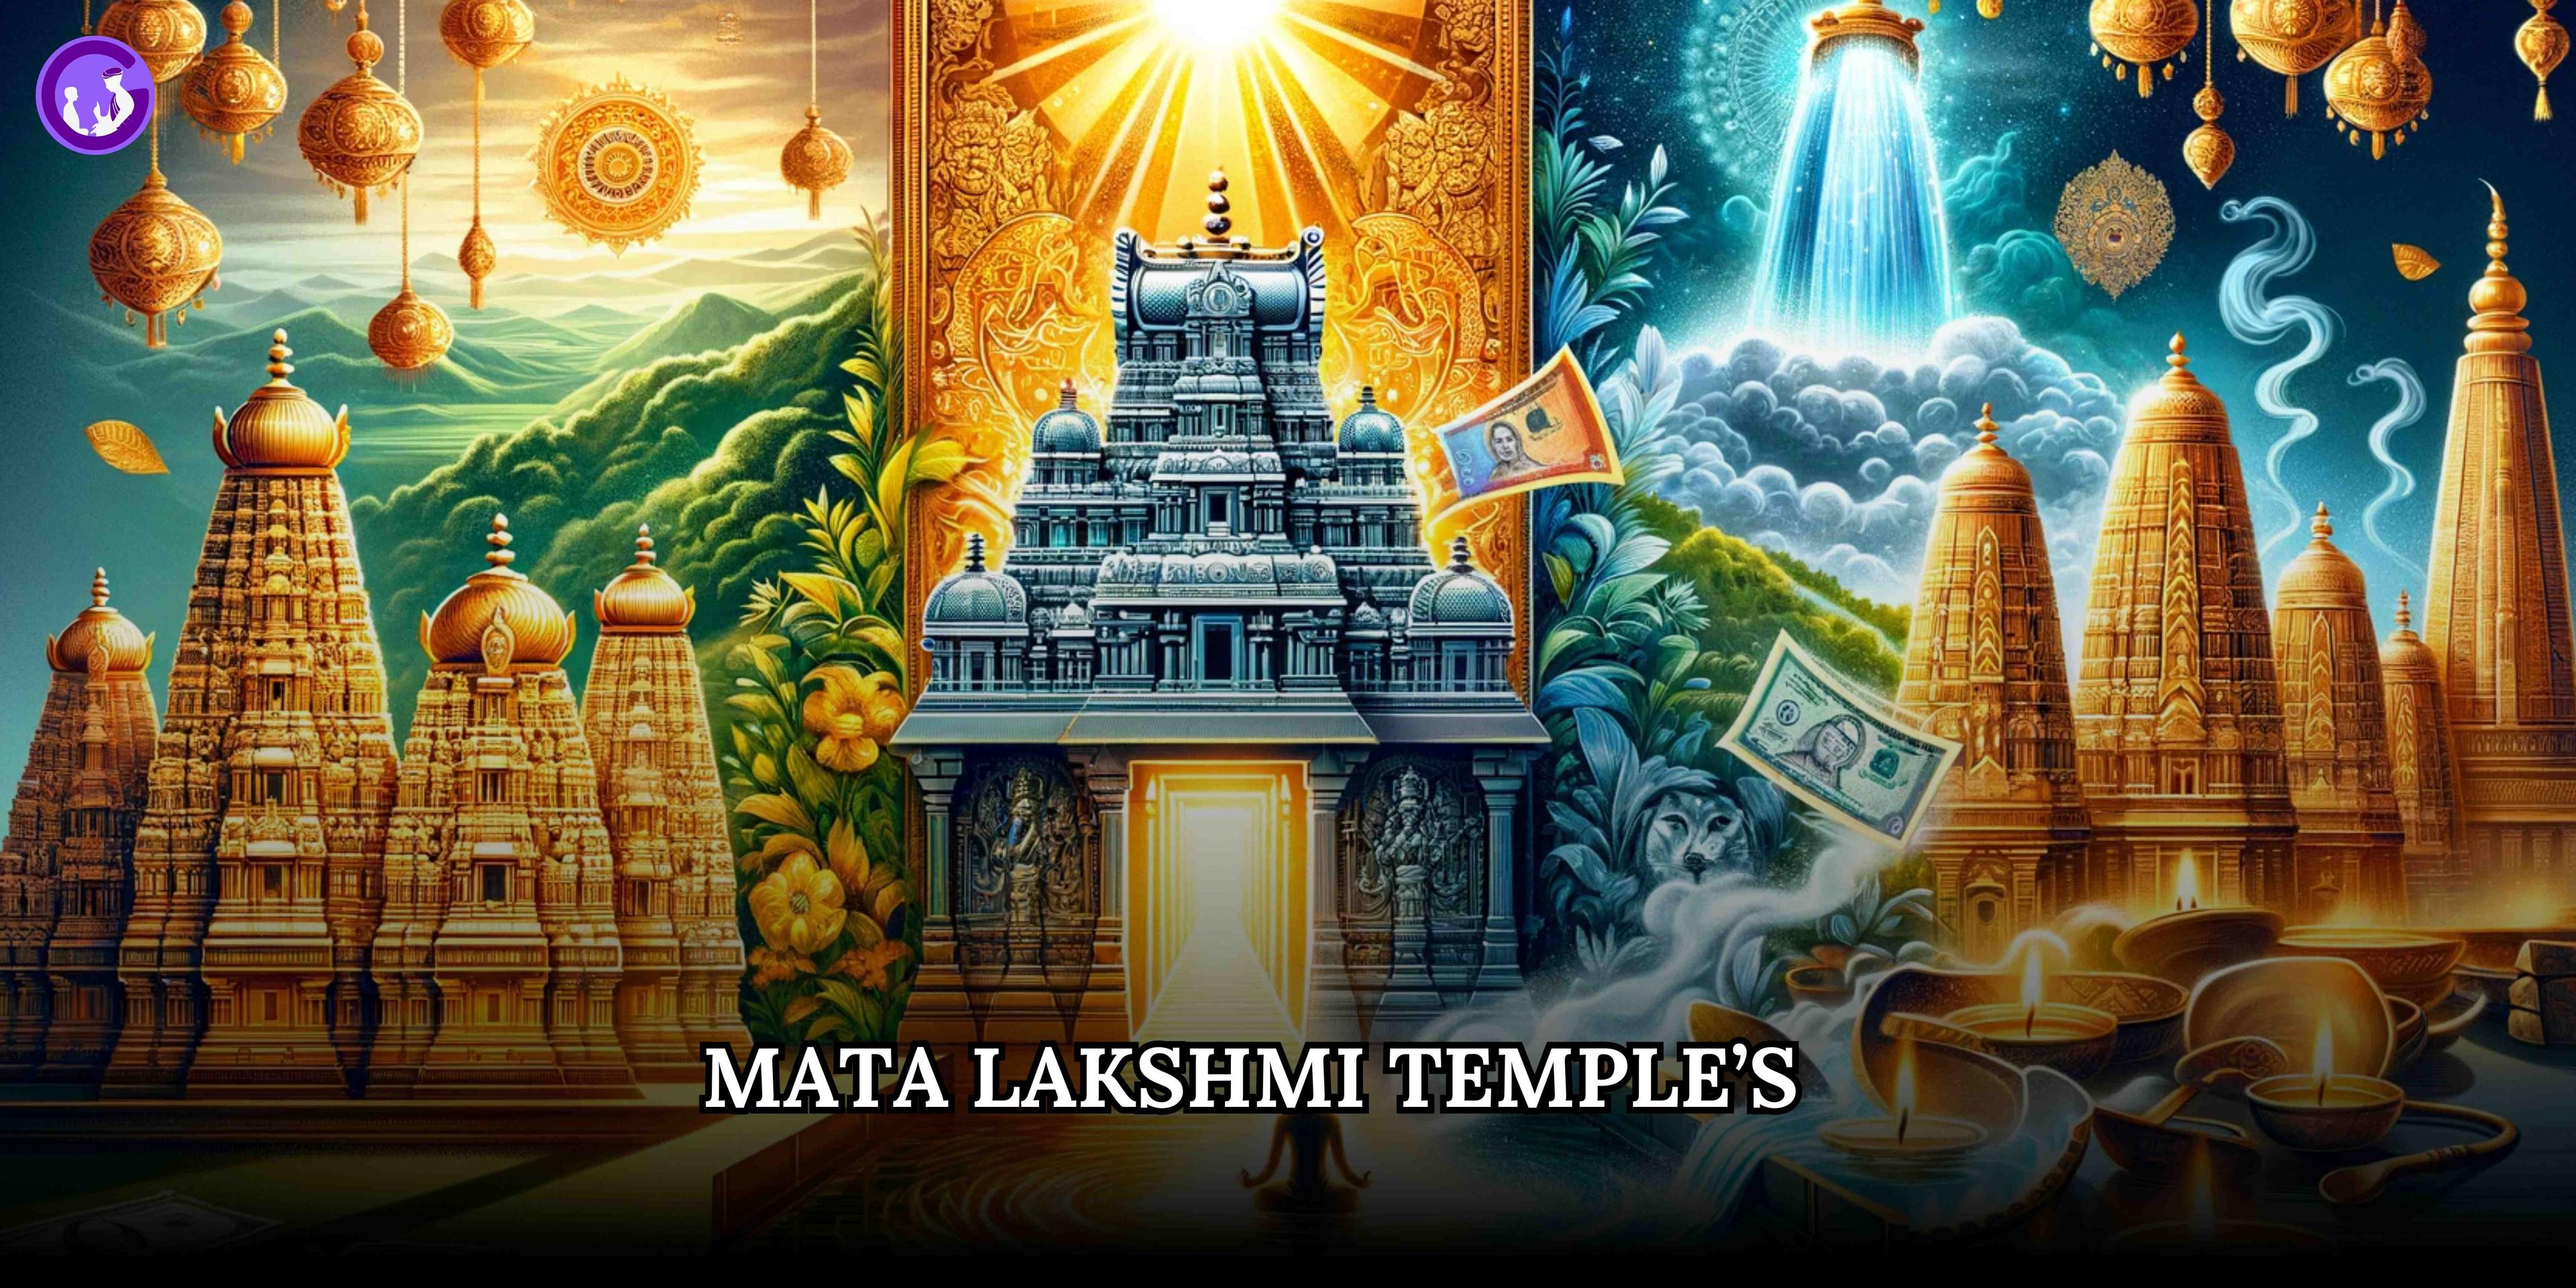 माता लक्ष्मी के प्रसिद्ध चमत्कारी मंदिर